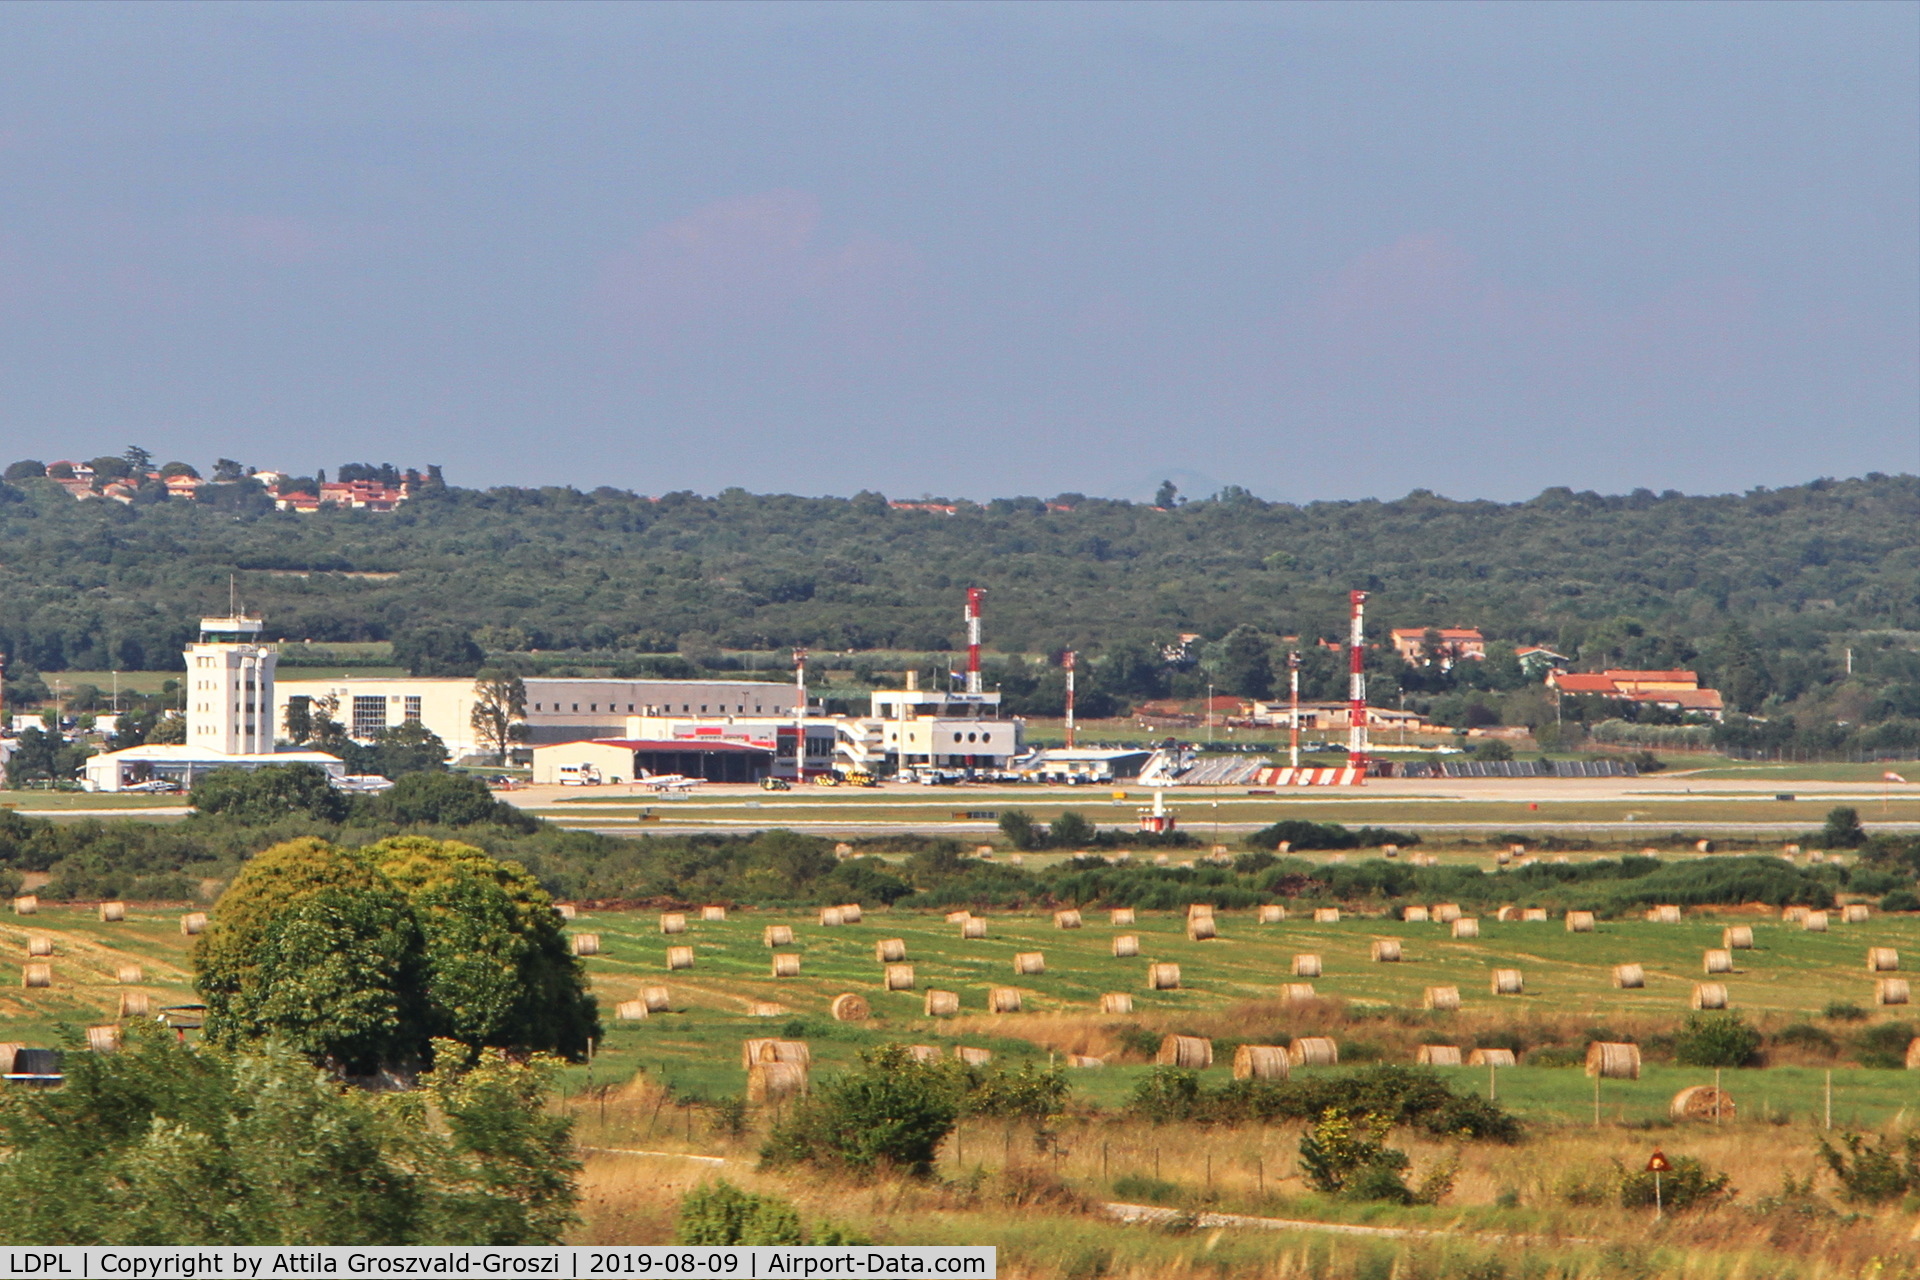 Pula Airport, Pula Croatia (LDPL) - Pula Airport (PUY/LDPL) Croatia